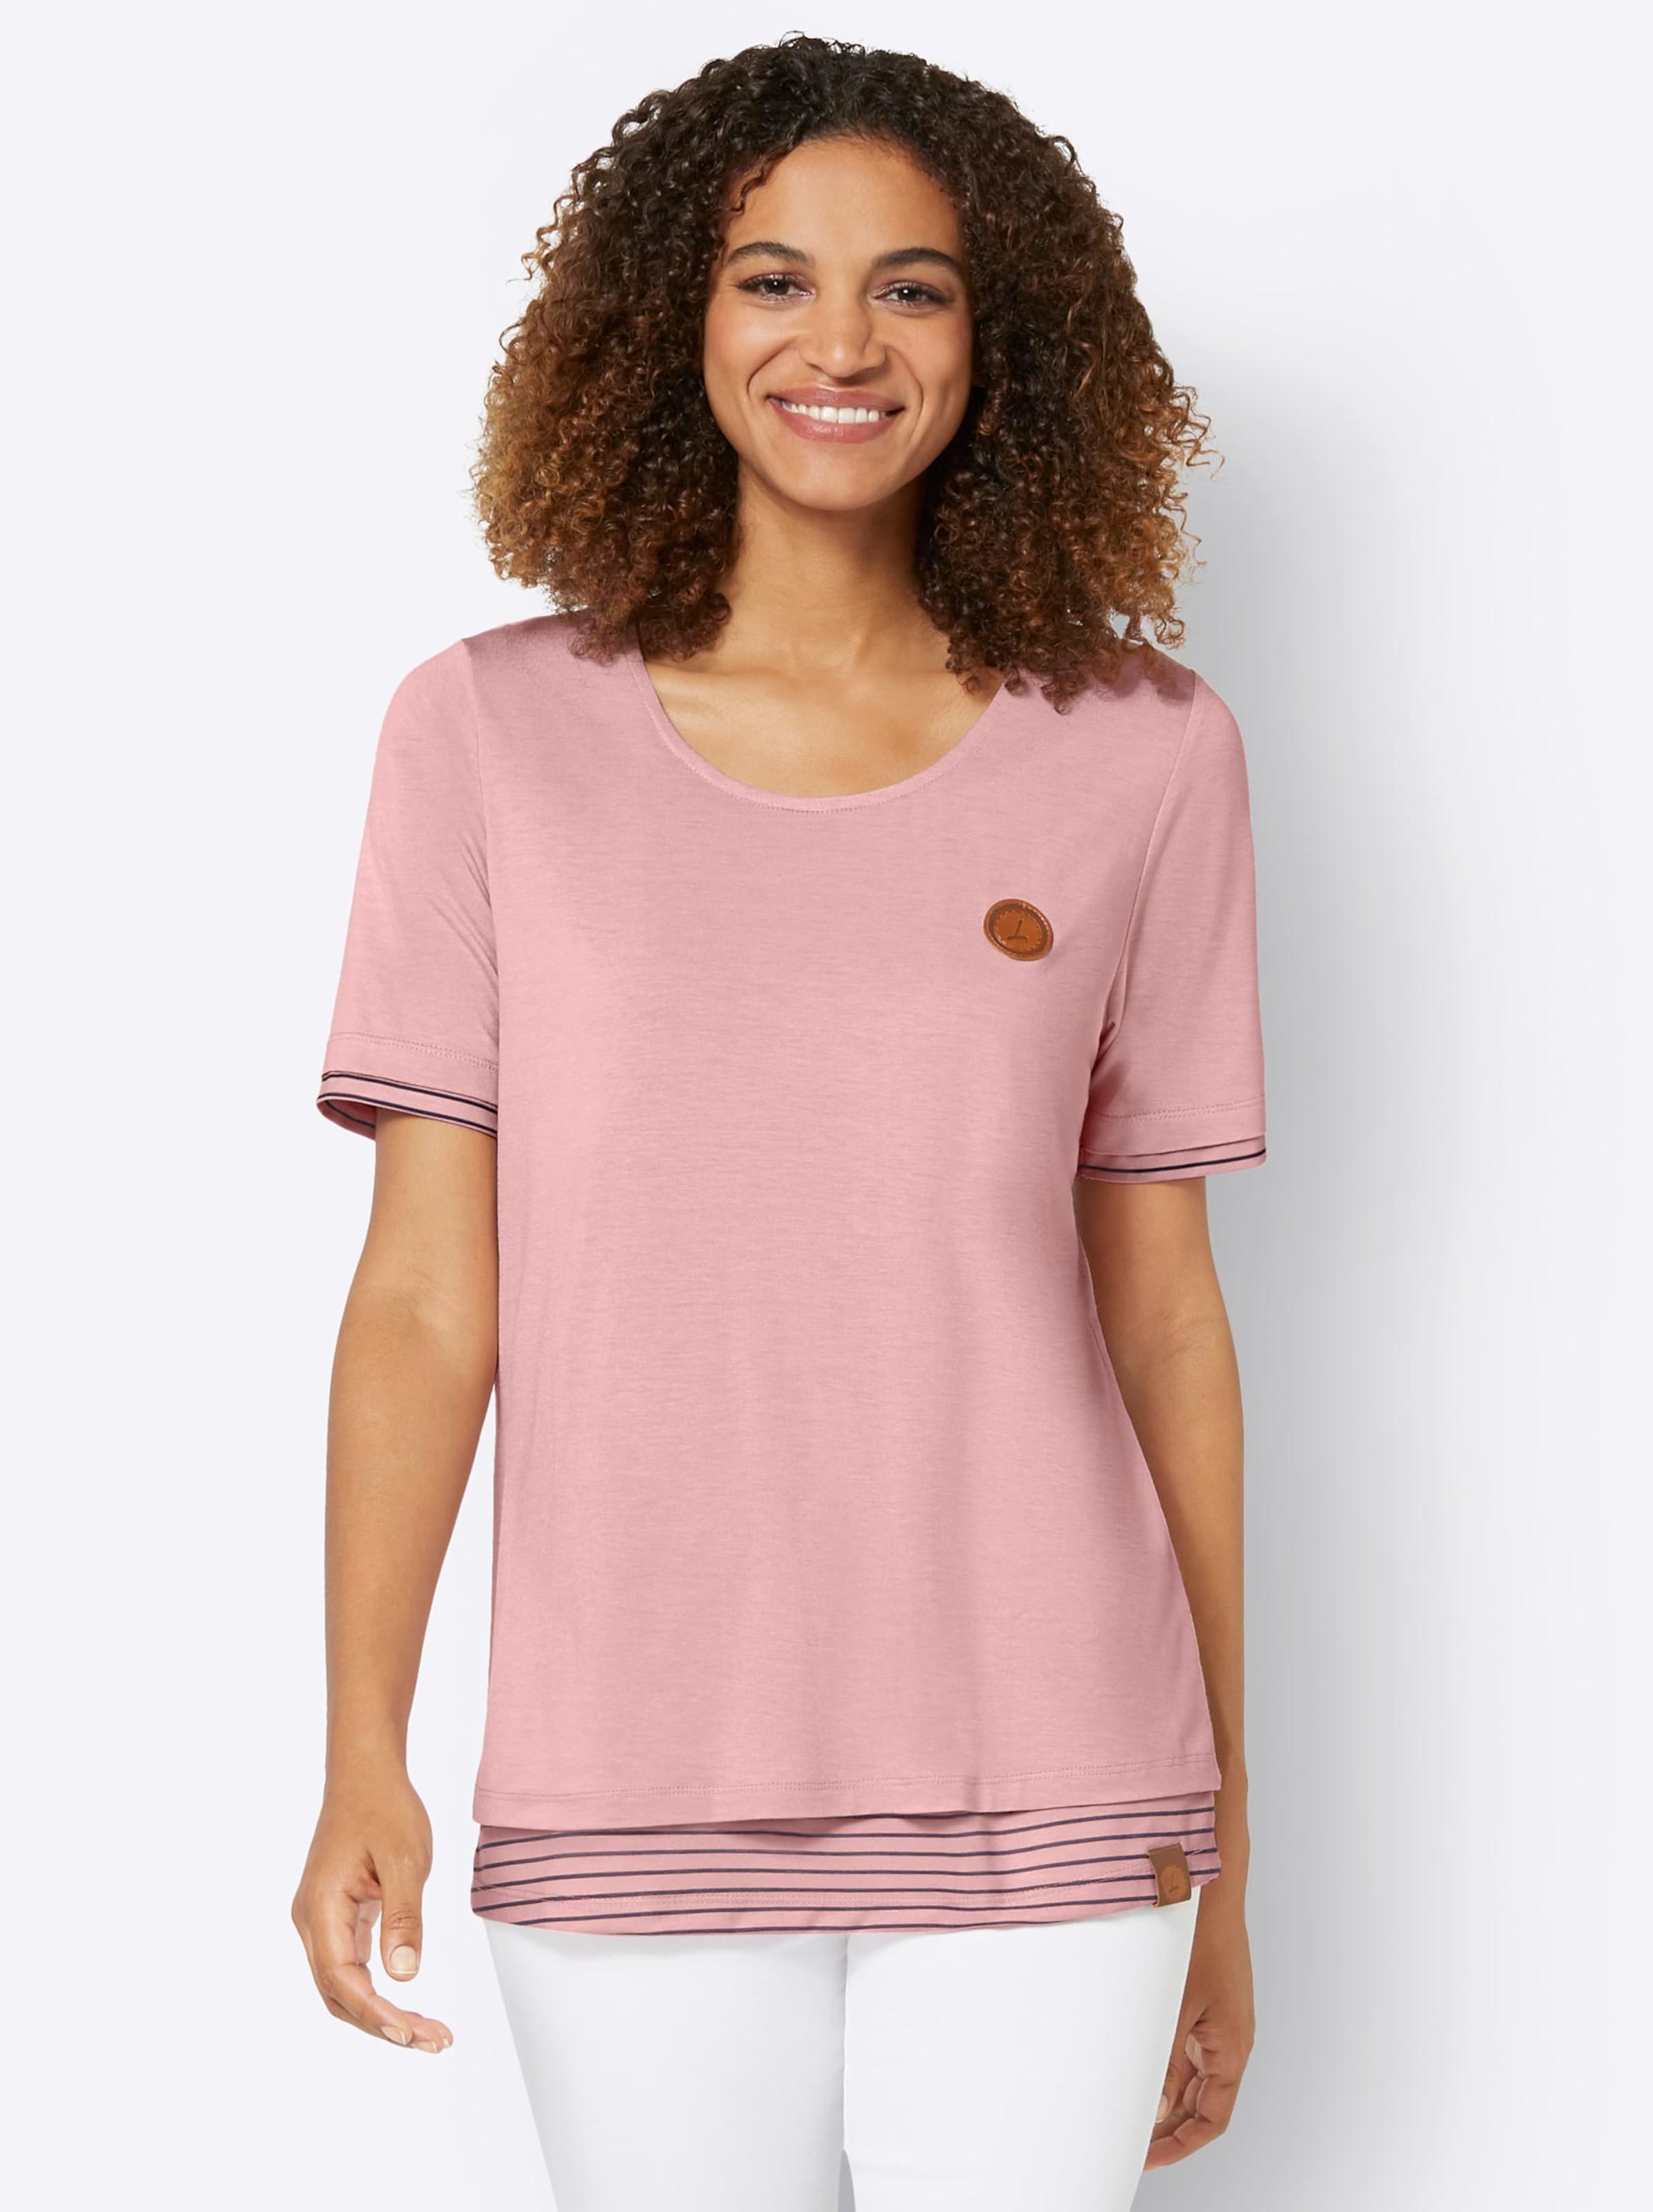 Damenmode Shirts 2-in-1-Shirt in rosenquarz 